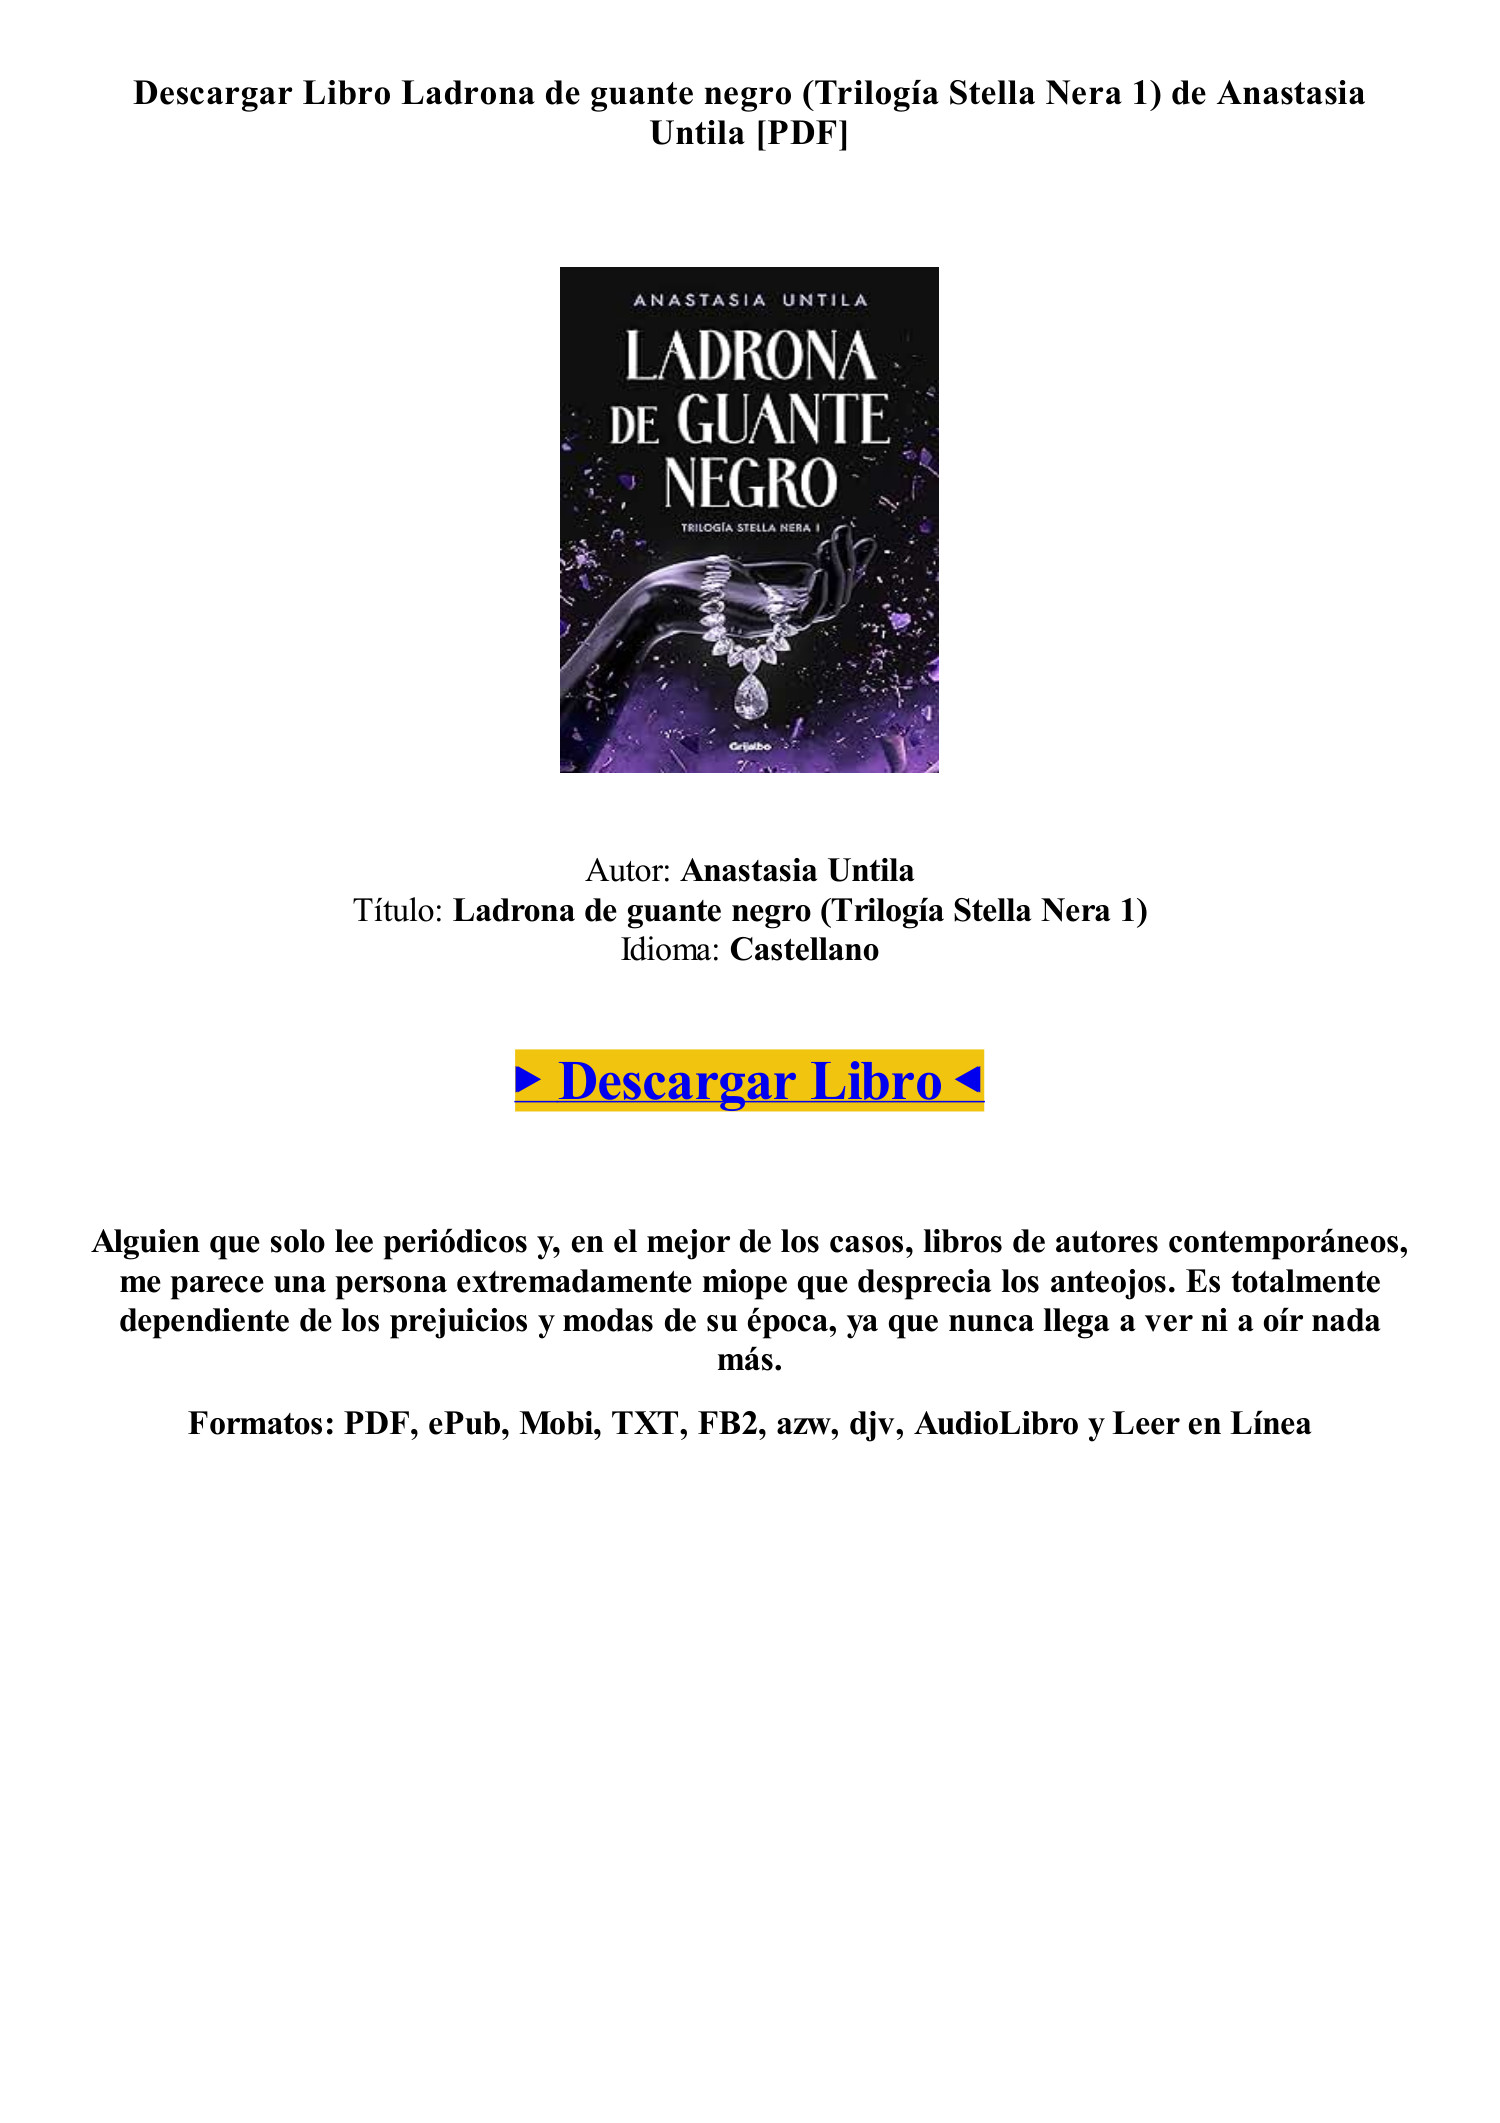 Descargar PDF EPUB] [GRATIS] Ladrona de guante negro (Trilogía Stella Nera  1) de Anastasia Untila TXT.pdf